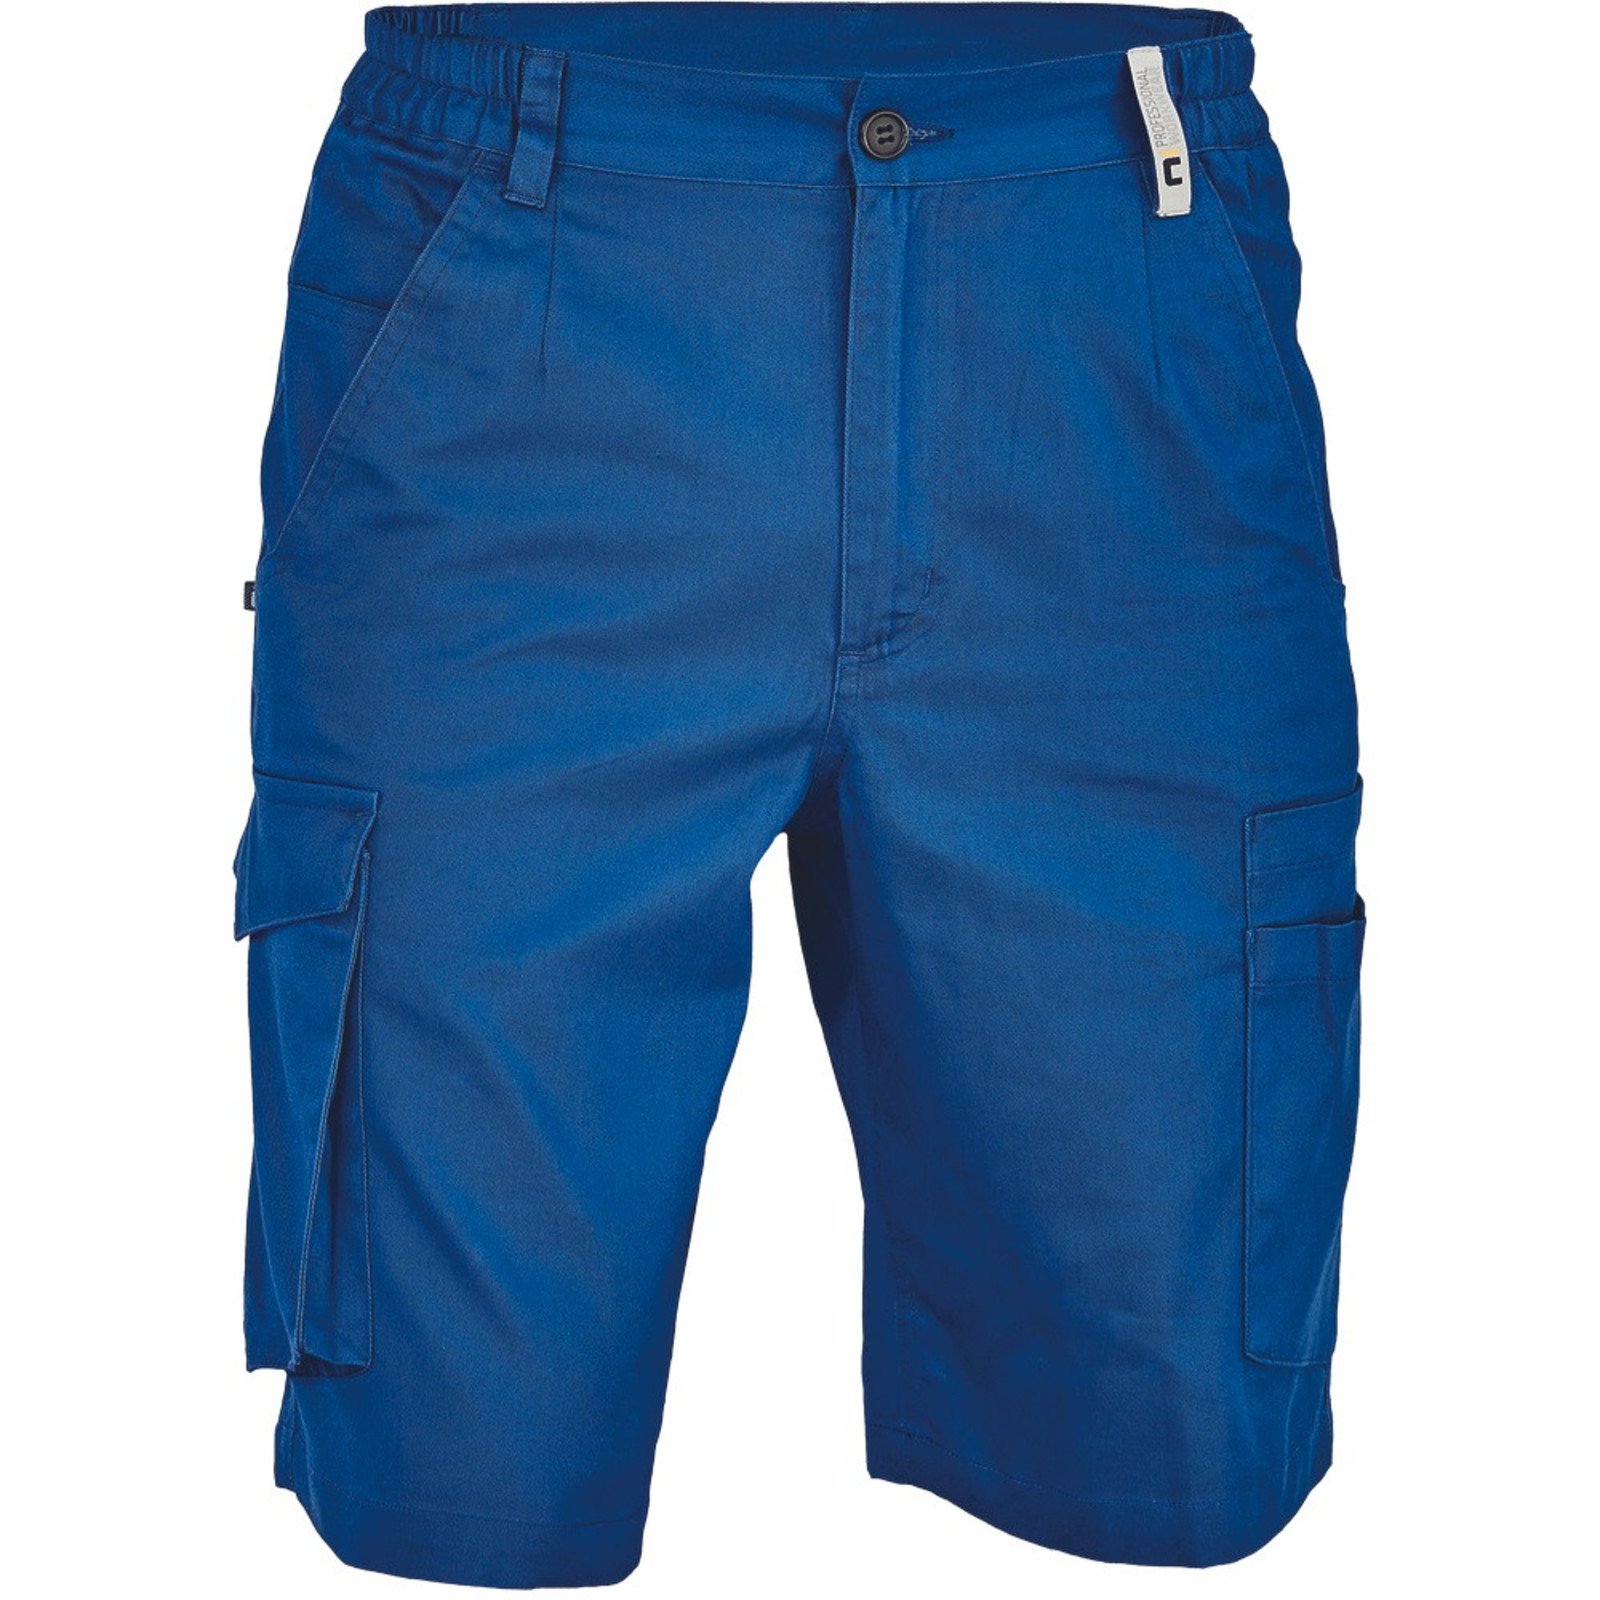 Pánske pracovné šortky Cerva Ciudades Basic Gijon - veľkosť: 46, farba: royal blue